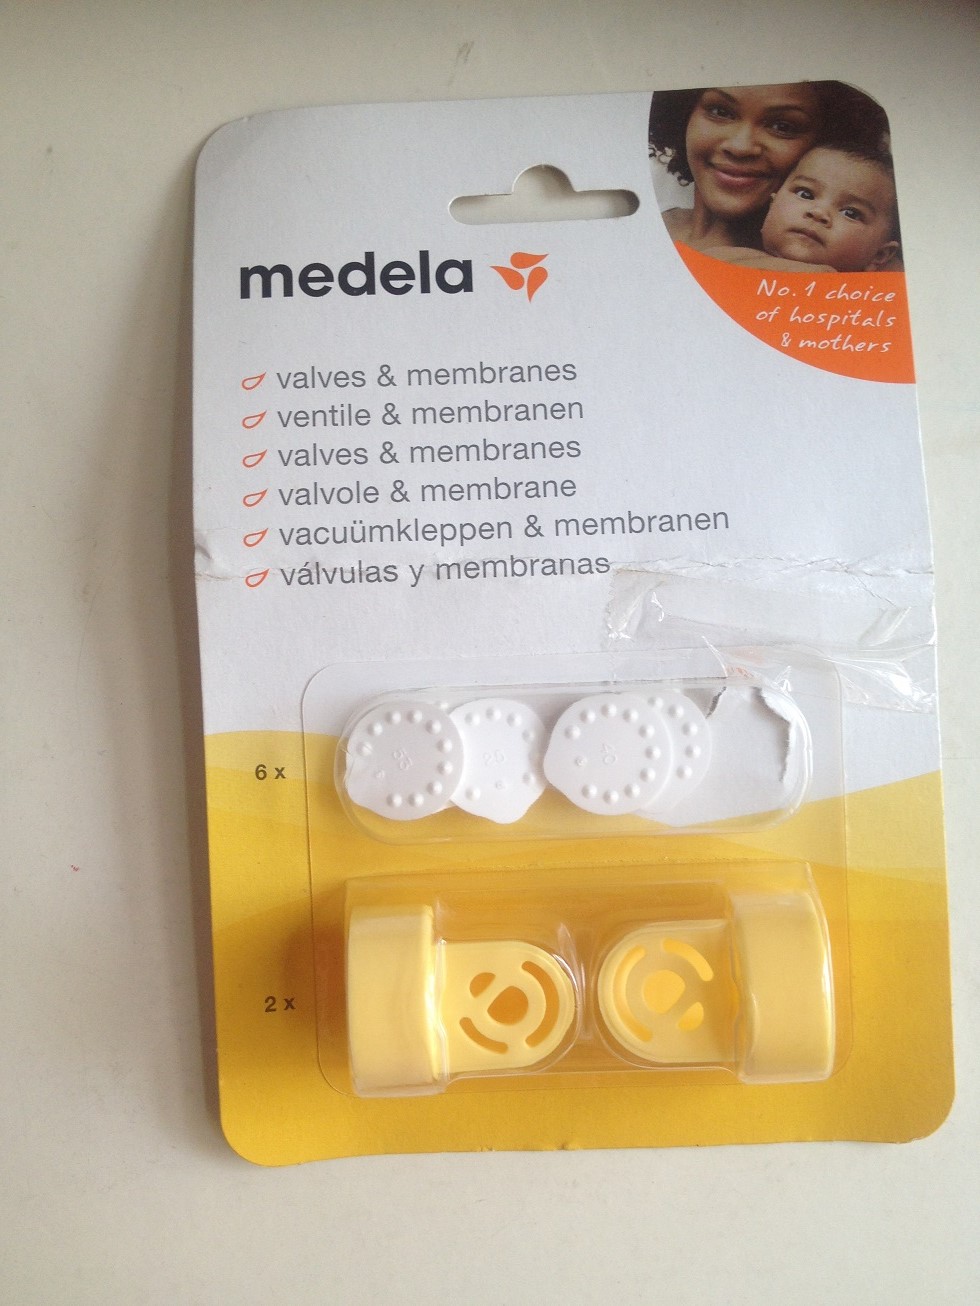 Medela valves & membranes. 全新medela吸奶器5片小白片及2配件。共15。